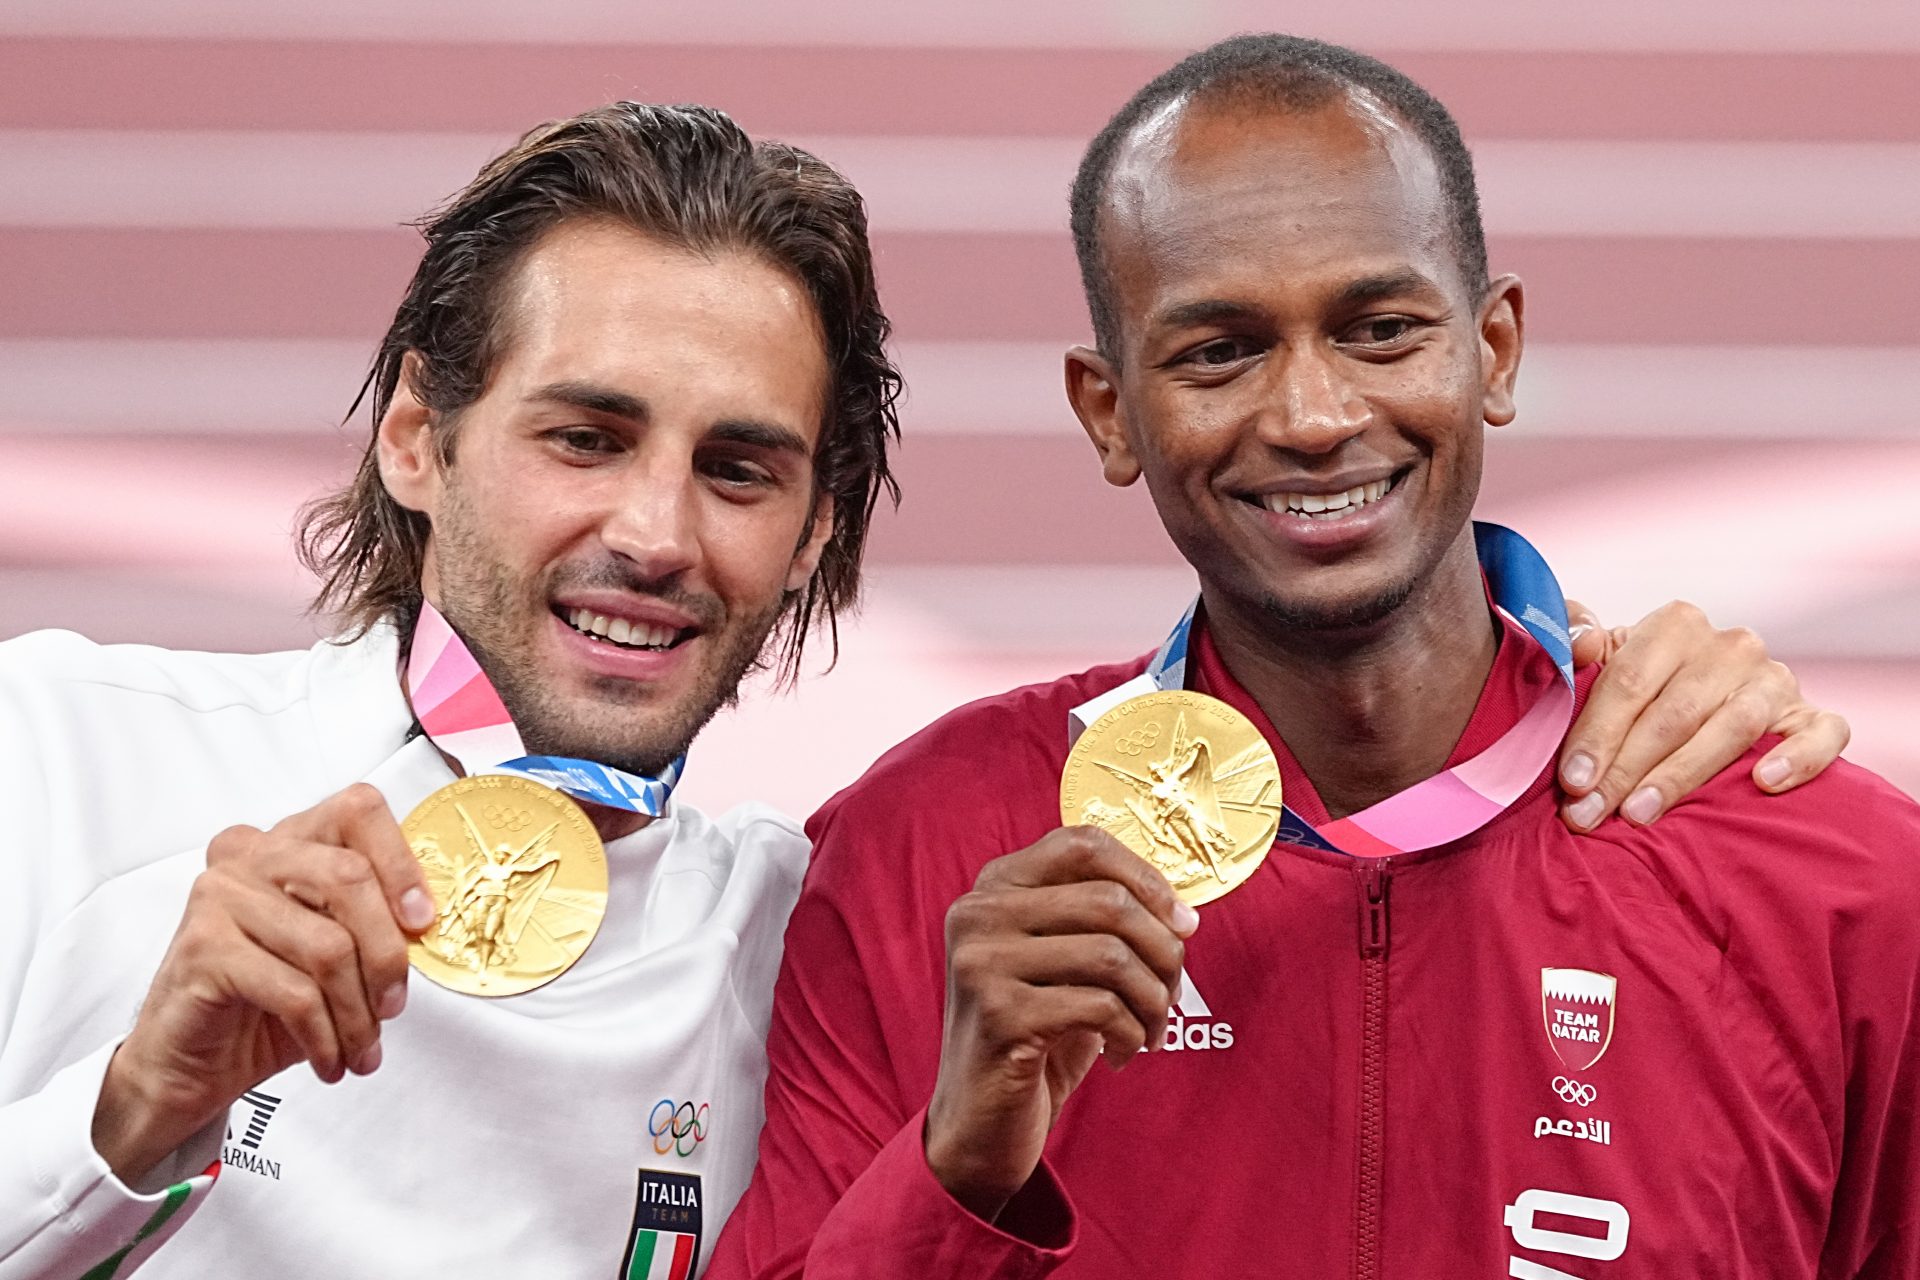 1ᵉʳ août 2021 : le jour où Barshim et Tamberi se sont partagés une médaille d'or olympique